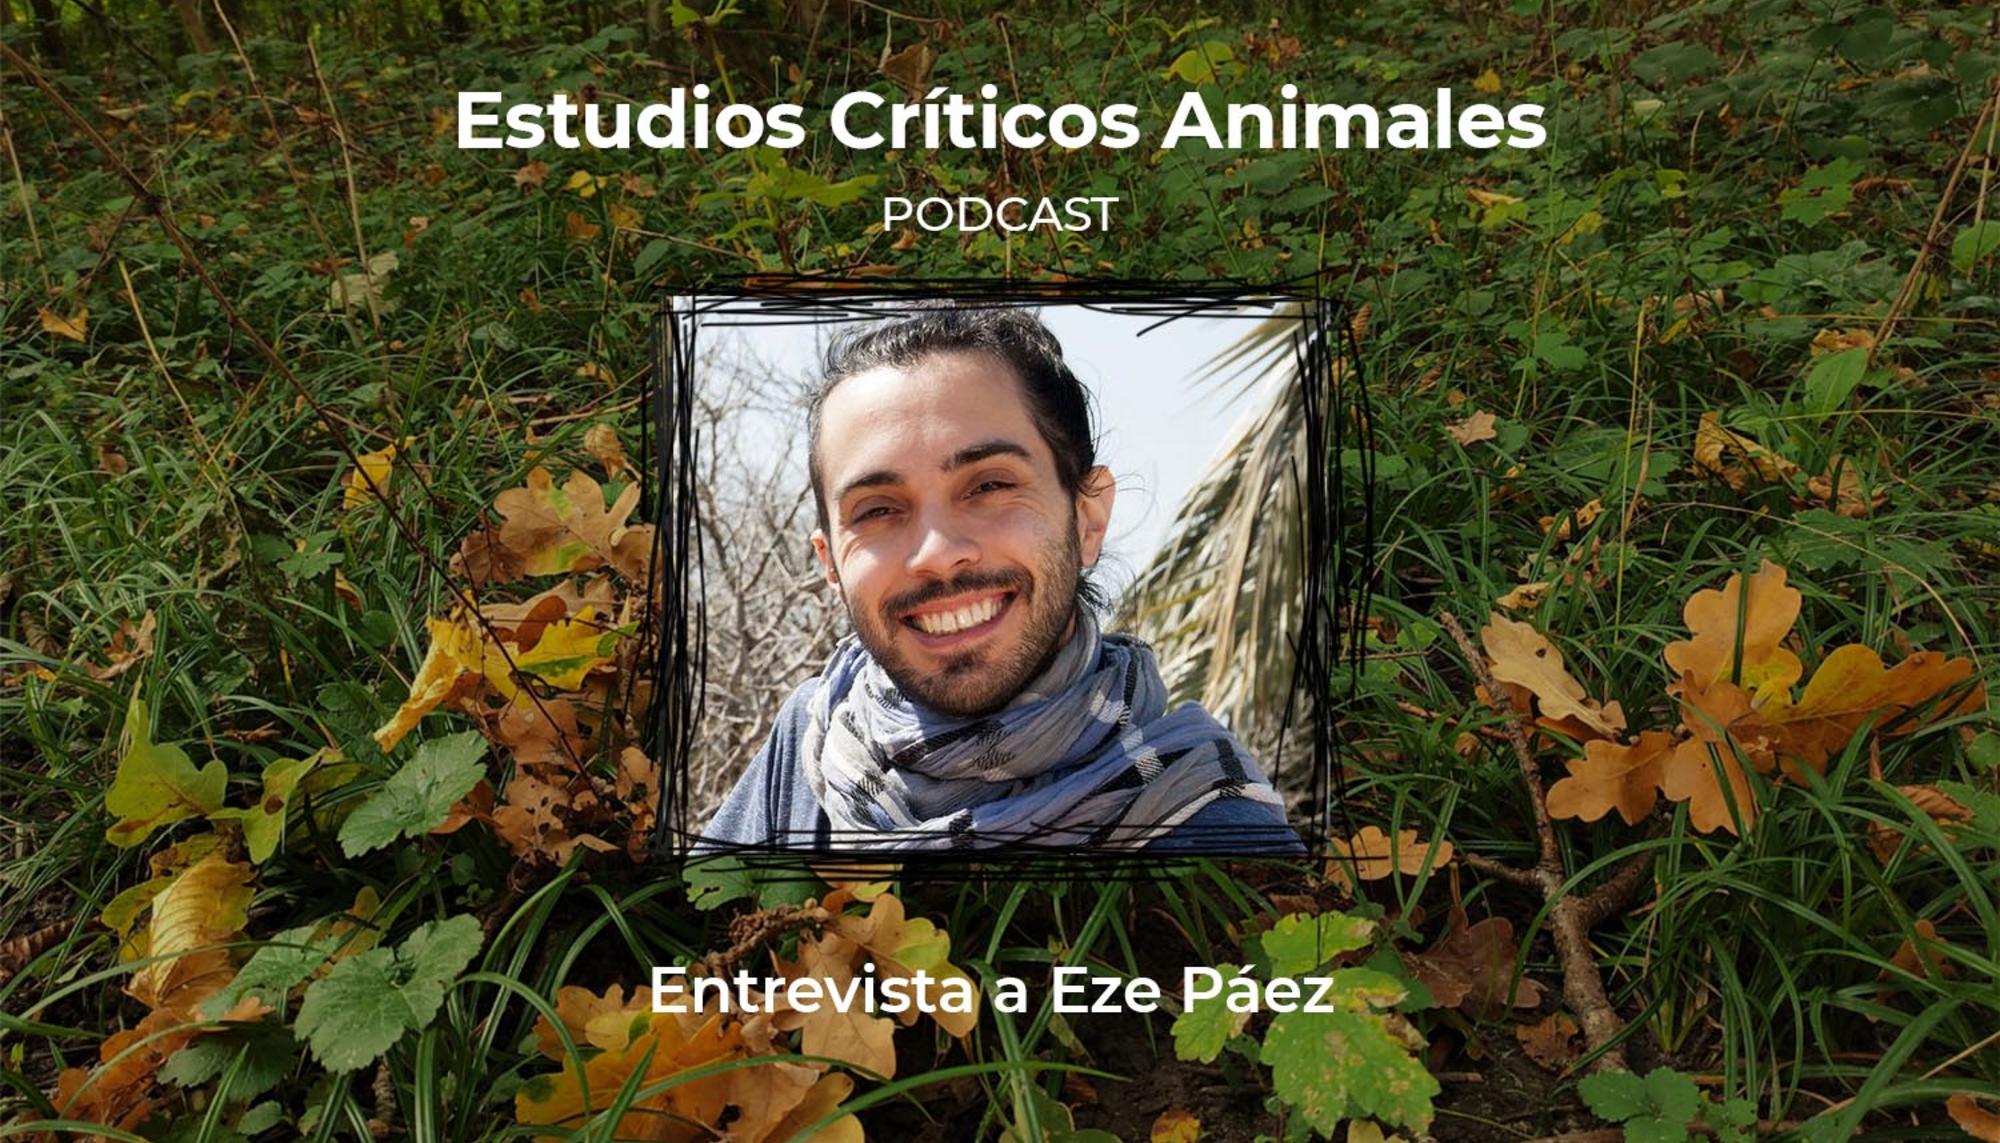 Entrevista a Eze Páez - Infoanimal